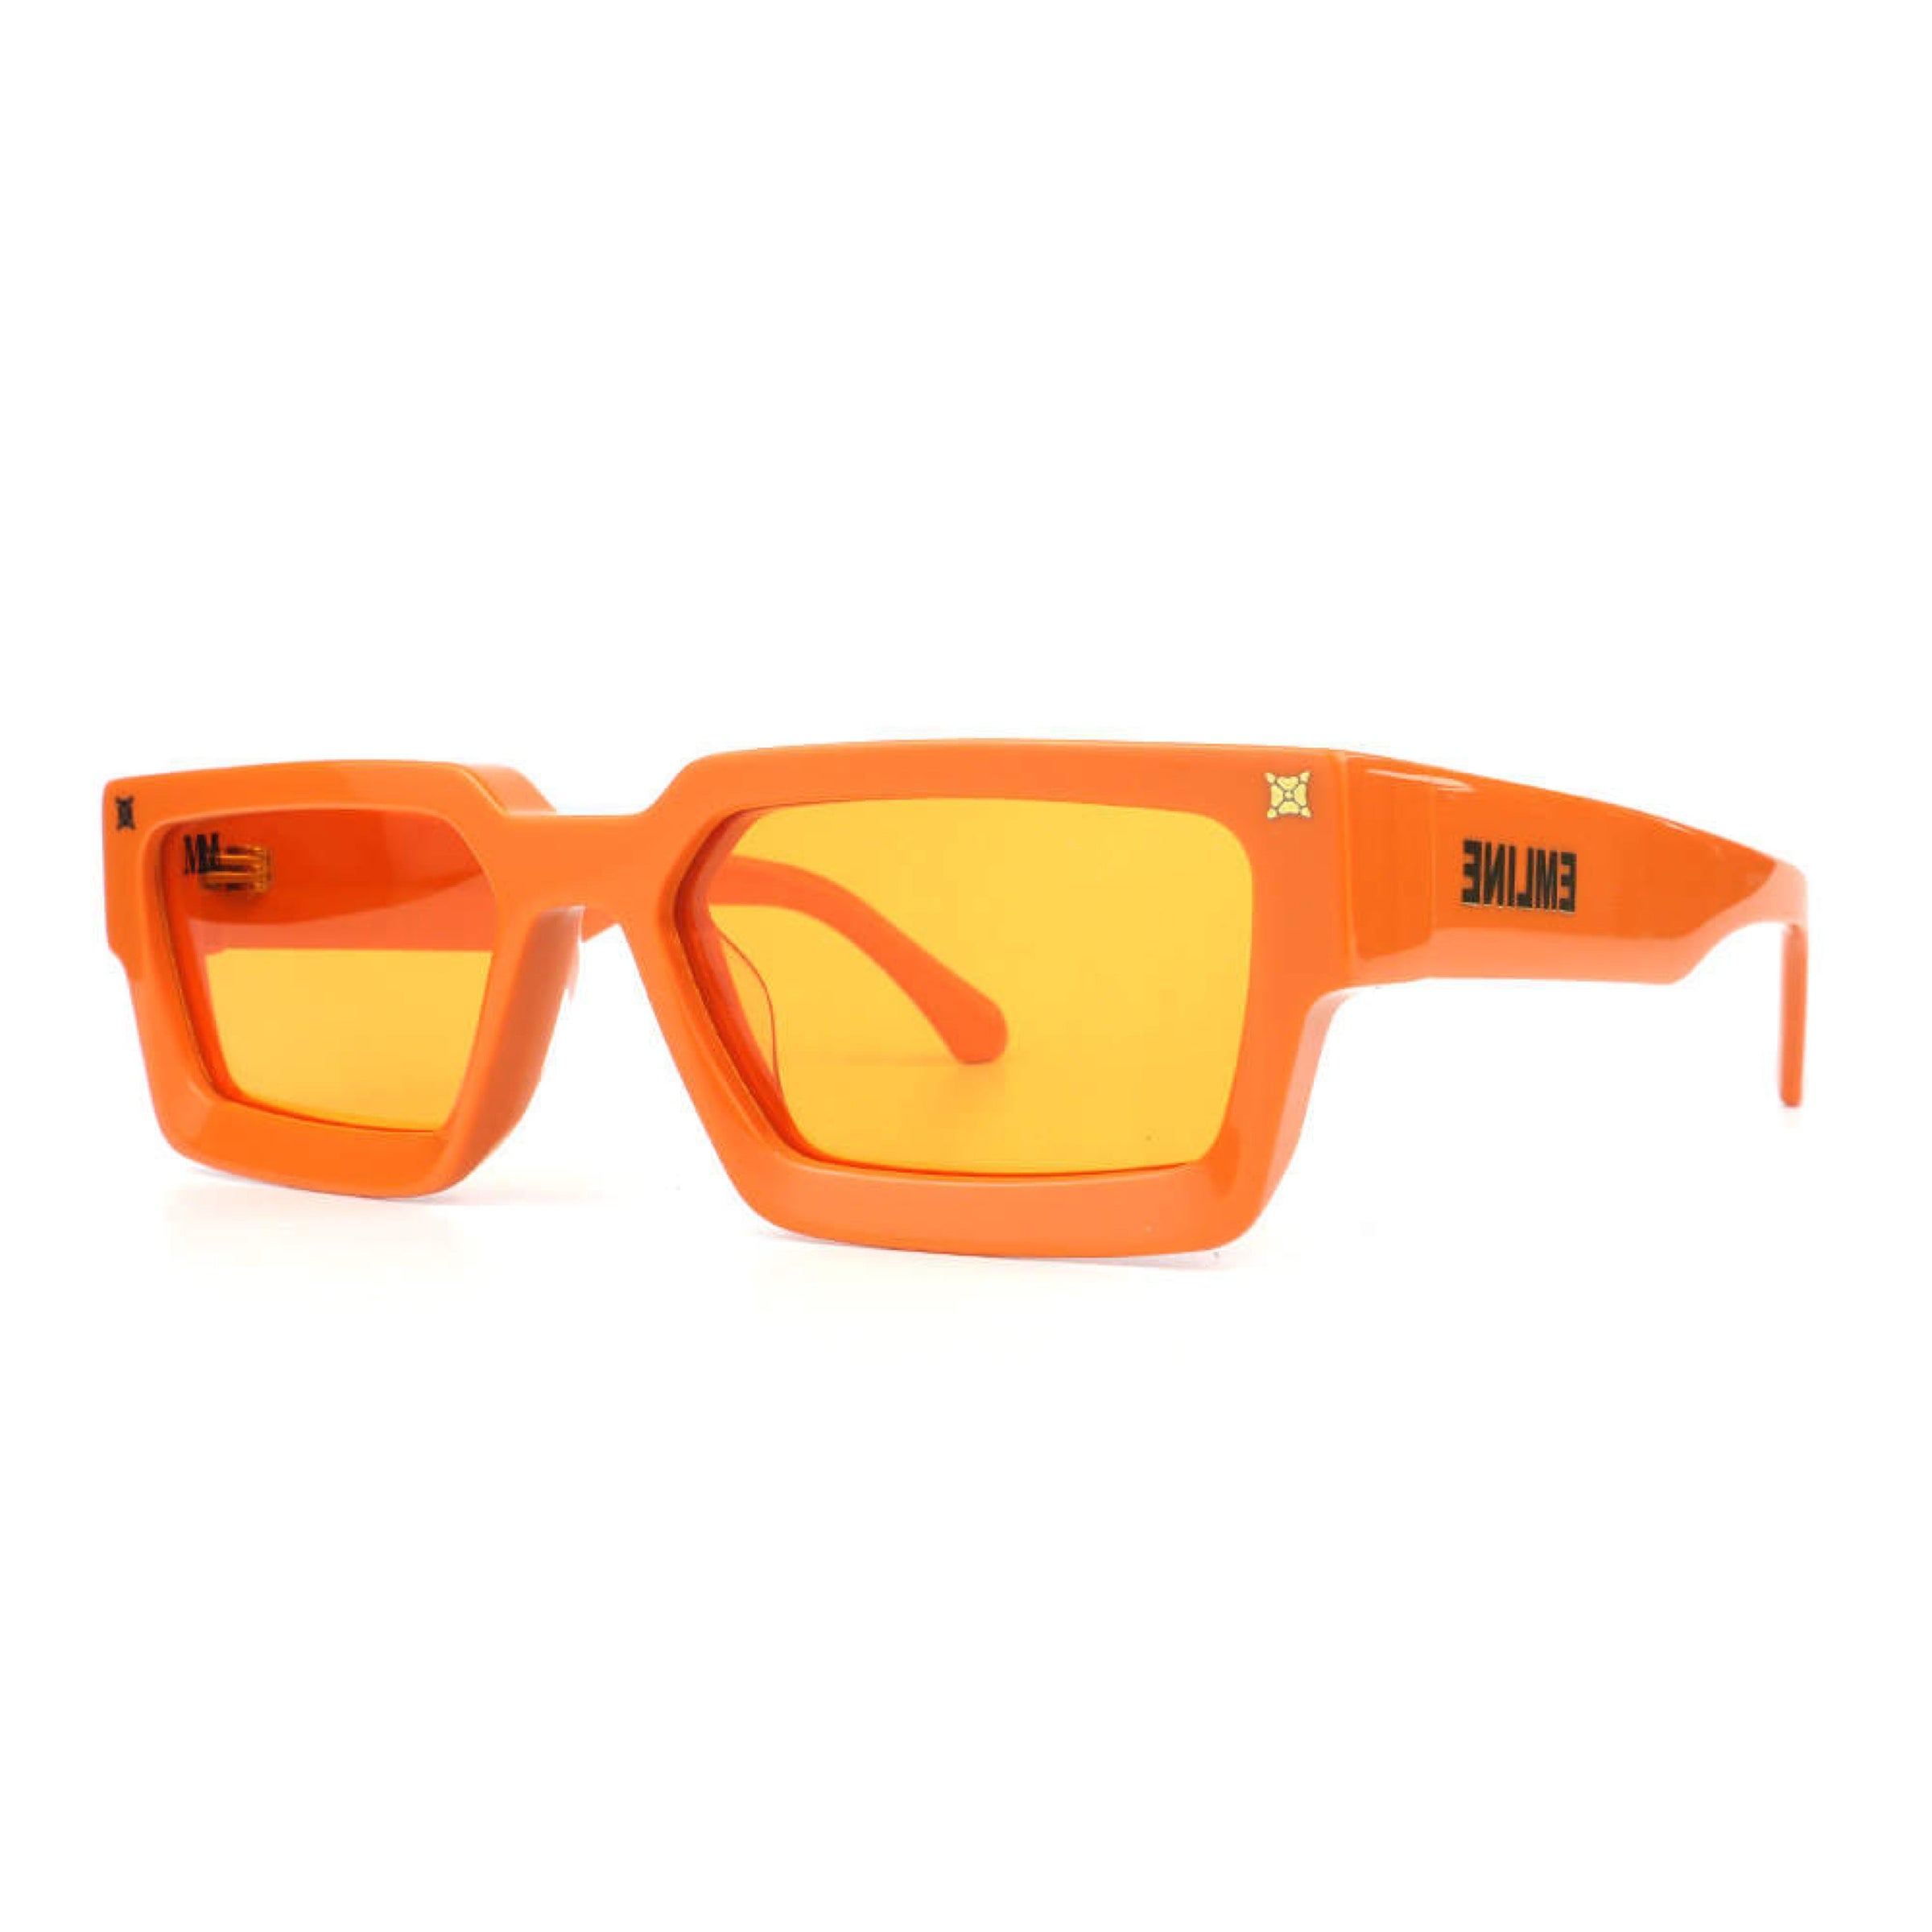 vuitton sunglasses orange